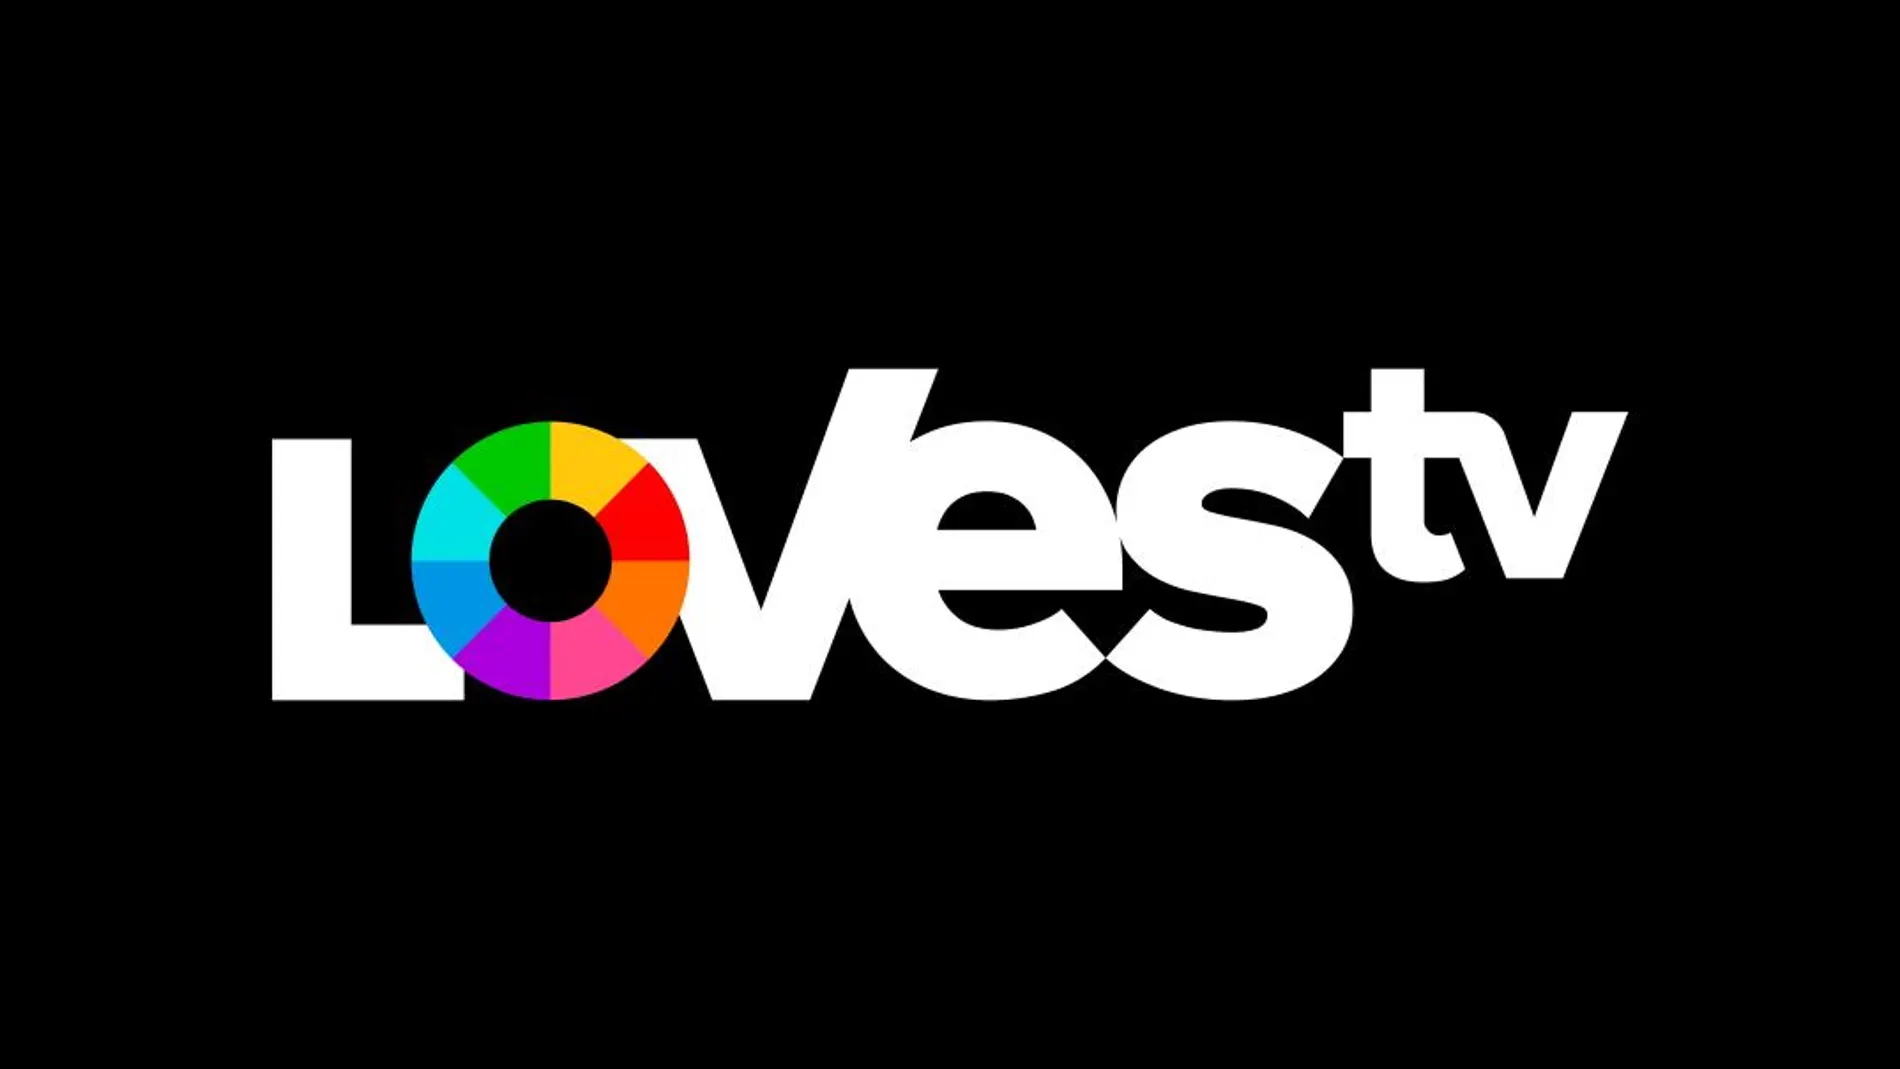 LOVEStv arrancará sus emisiones en pruebas el próximo 14 de junio